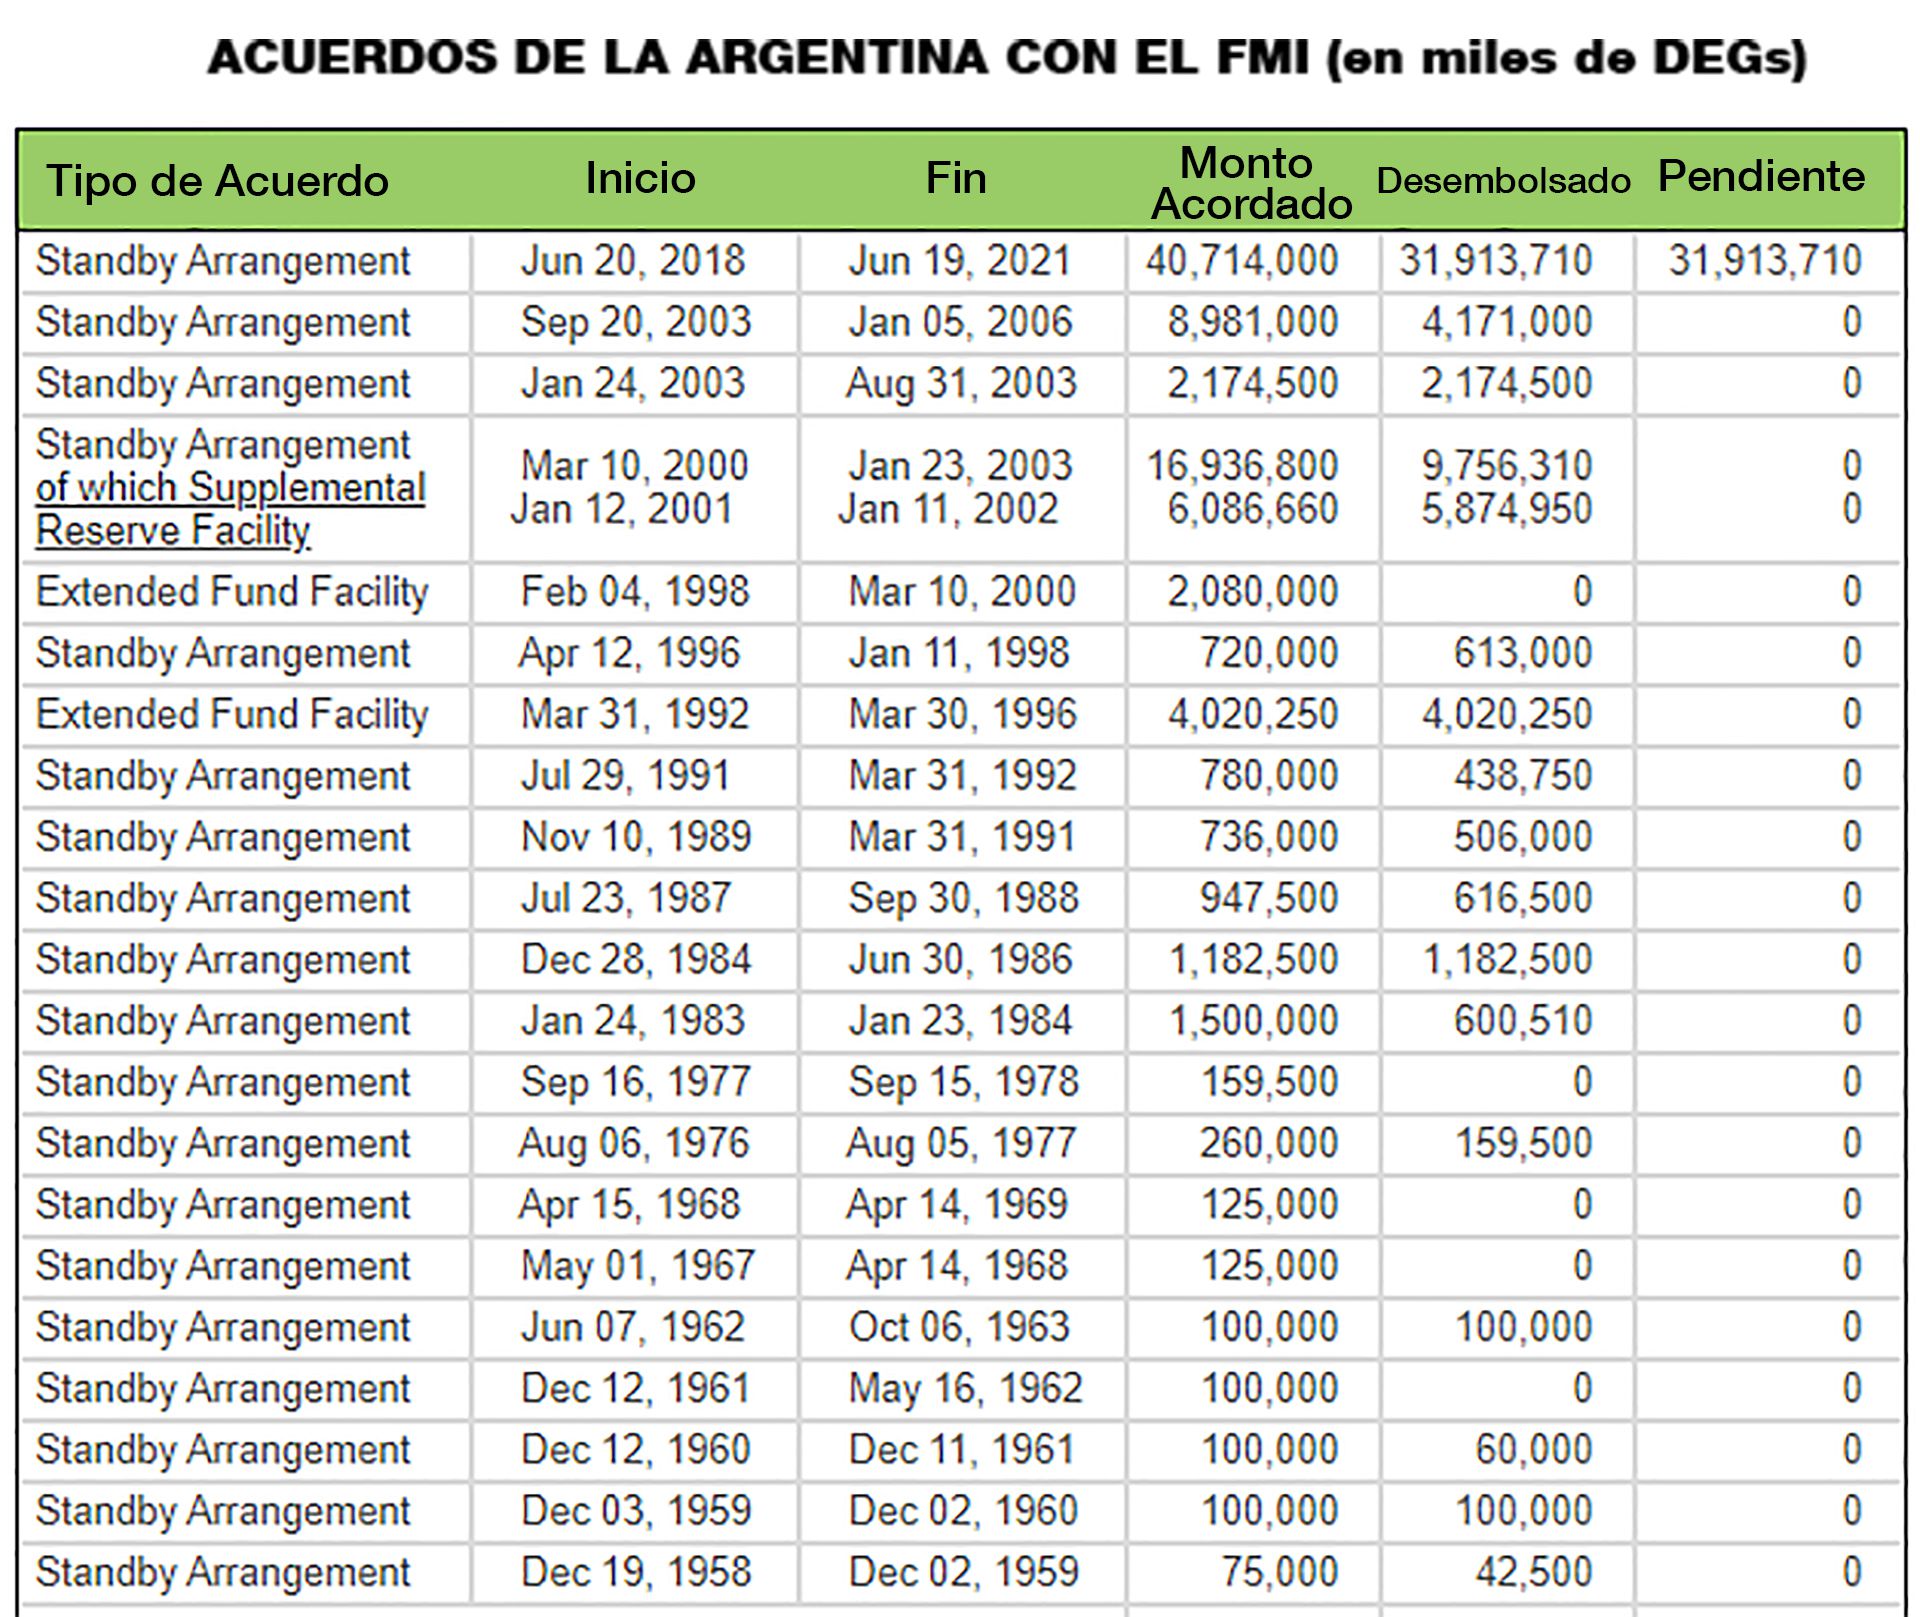 ACUERDOS DE LA ARGENTINA CON EL FMI